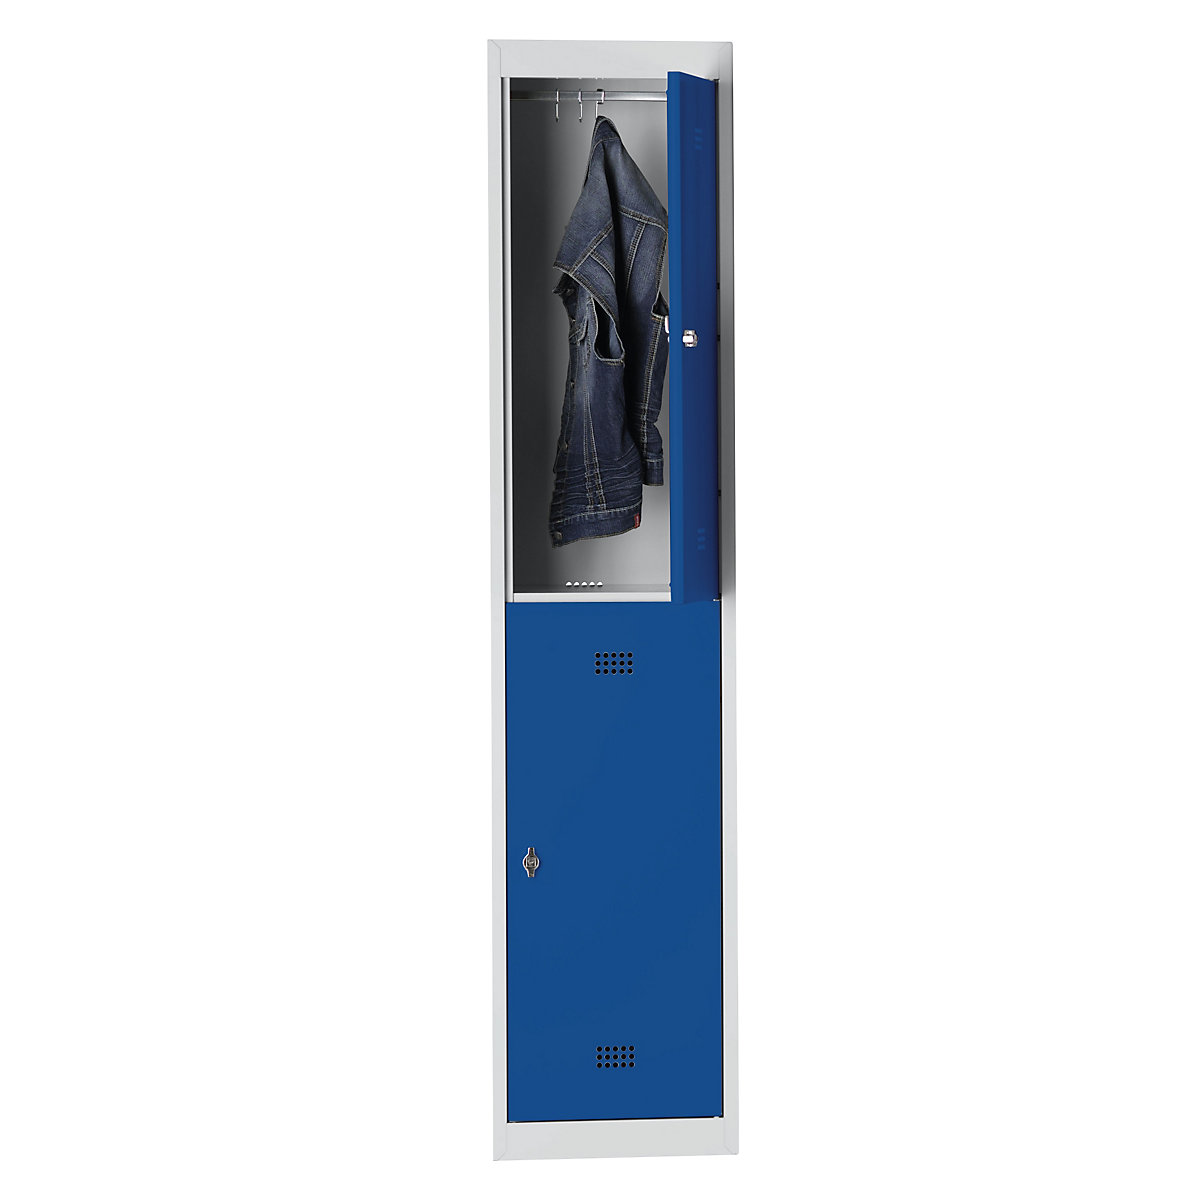 Wolf Stahlspind, 2 Abteile, Höhe 840 mm, Breite 400 mm, 1 Kleiderstange, Anbauelement, lichtgrau / enzianblau